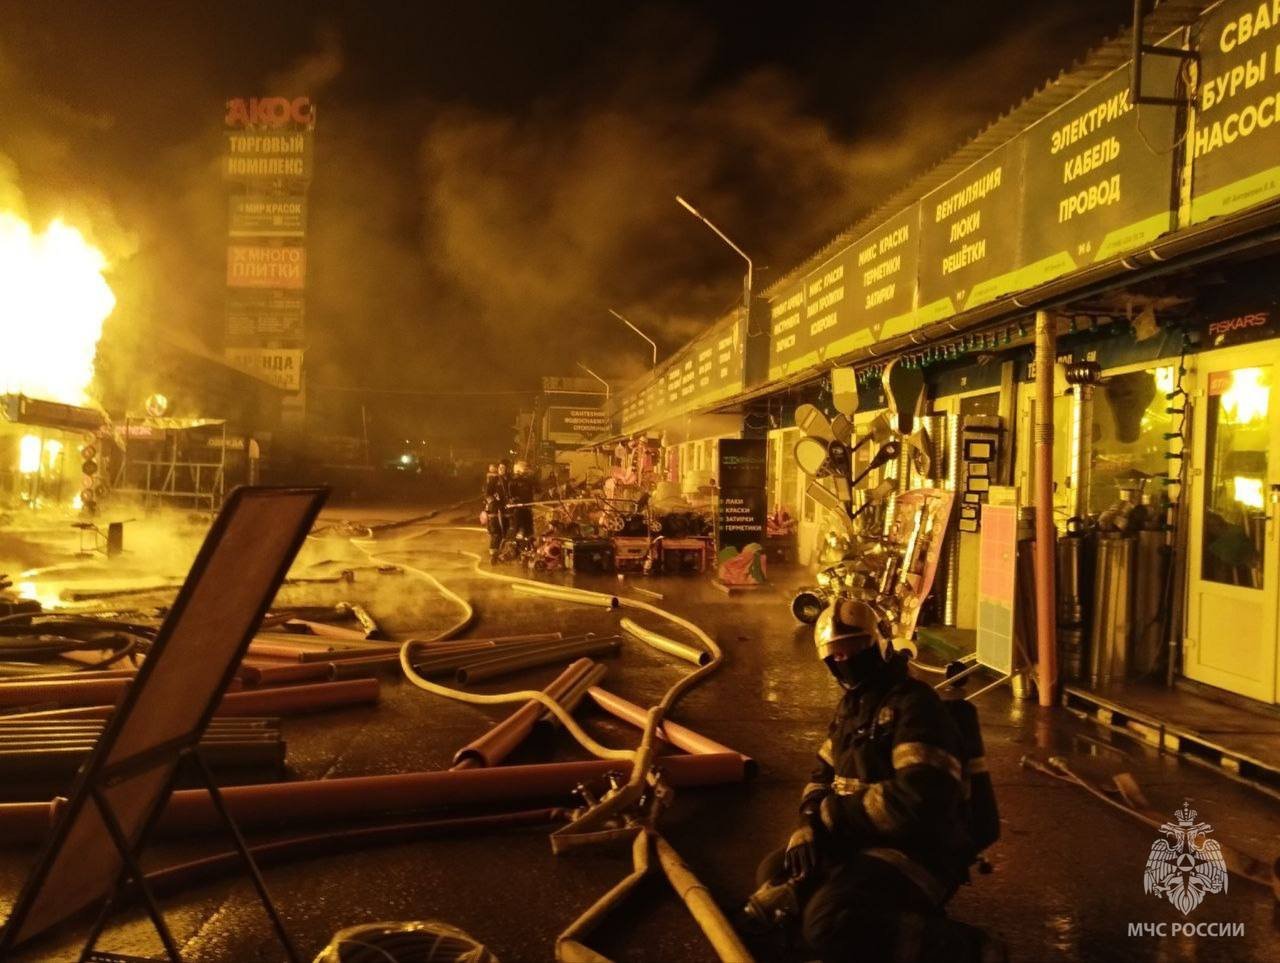 Пожар на строительном рынке «Акос» в подмосковном Одинцово потушен